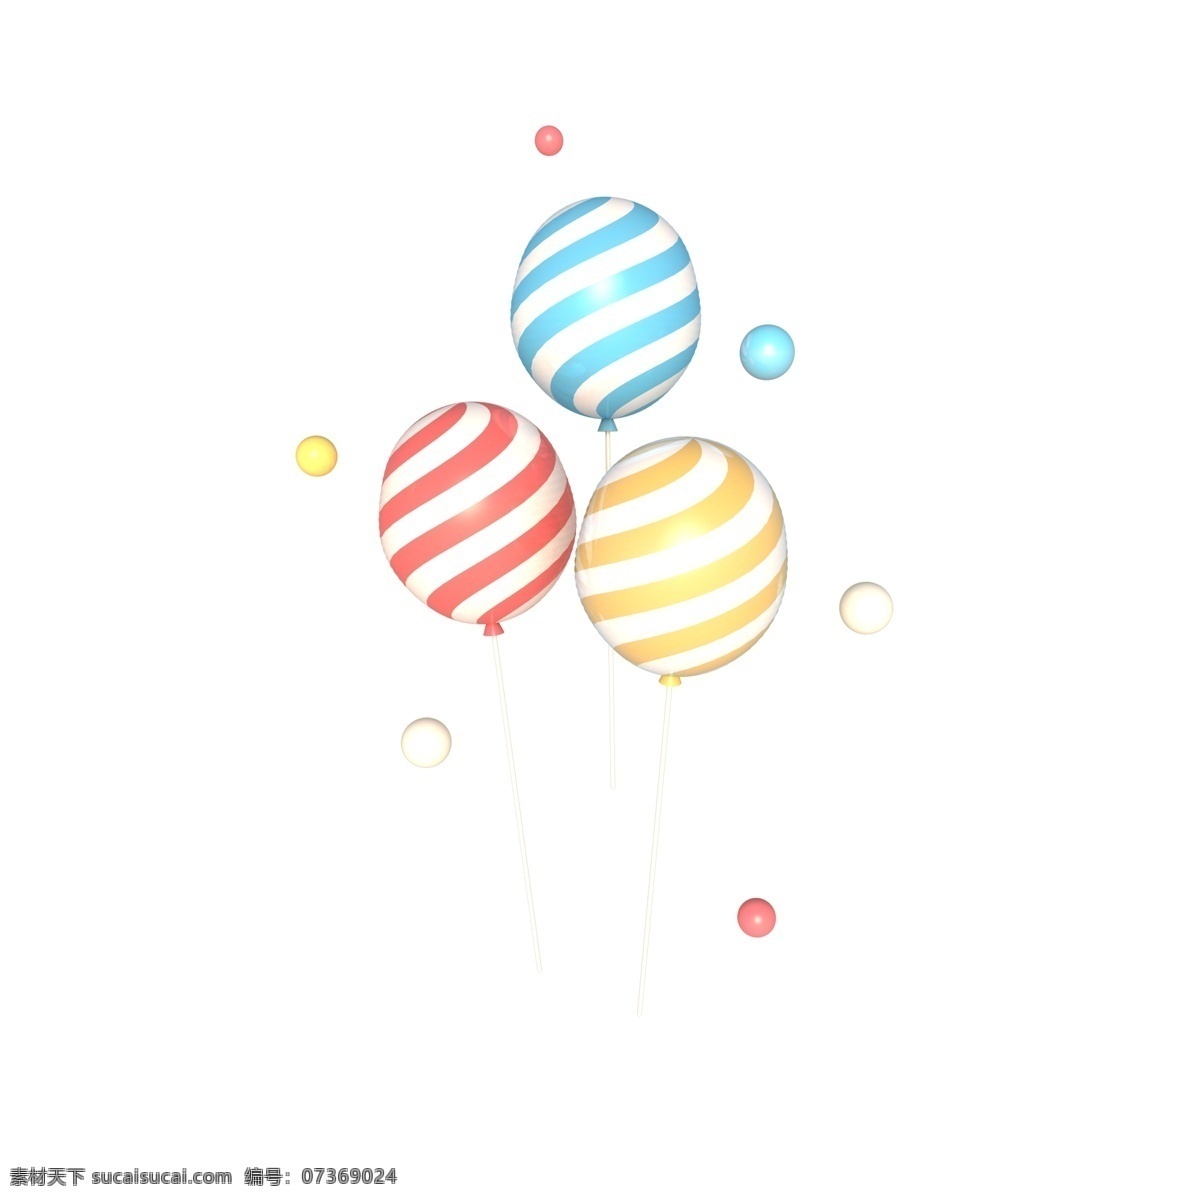 c4d 立体 电商 装饰 条纹 漂浮 气球 c4d立体 电商装饰 61儿童节 六一 节日气球 彩色 漂浮球 3d